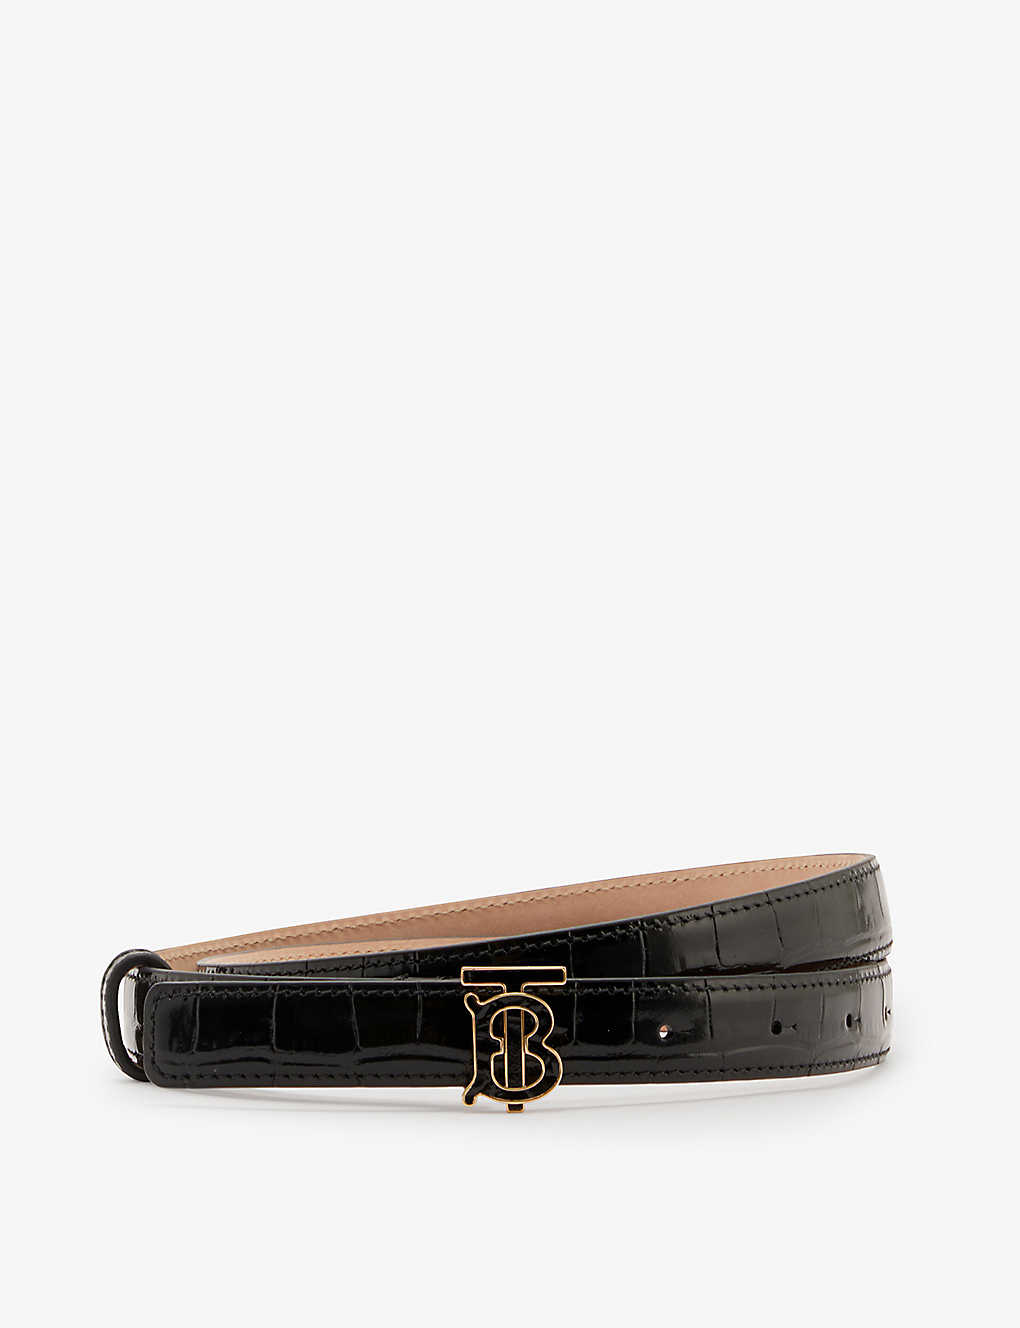 burberry belt gold buckle